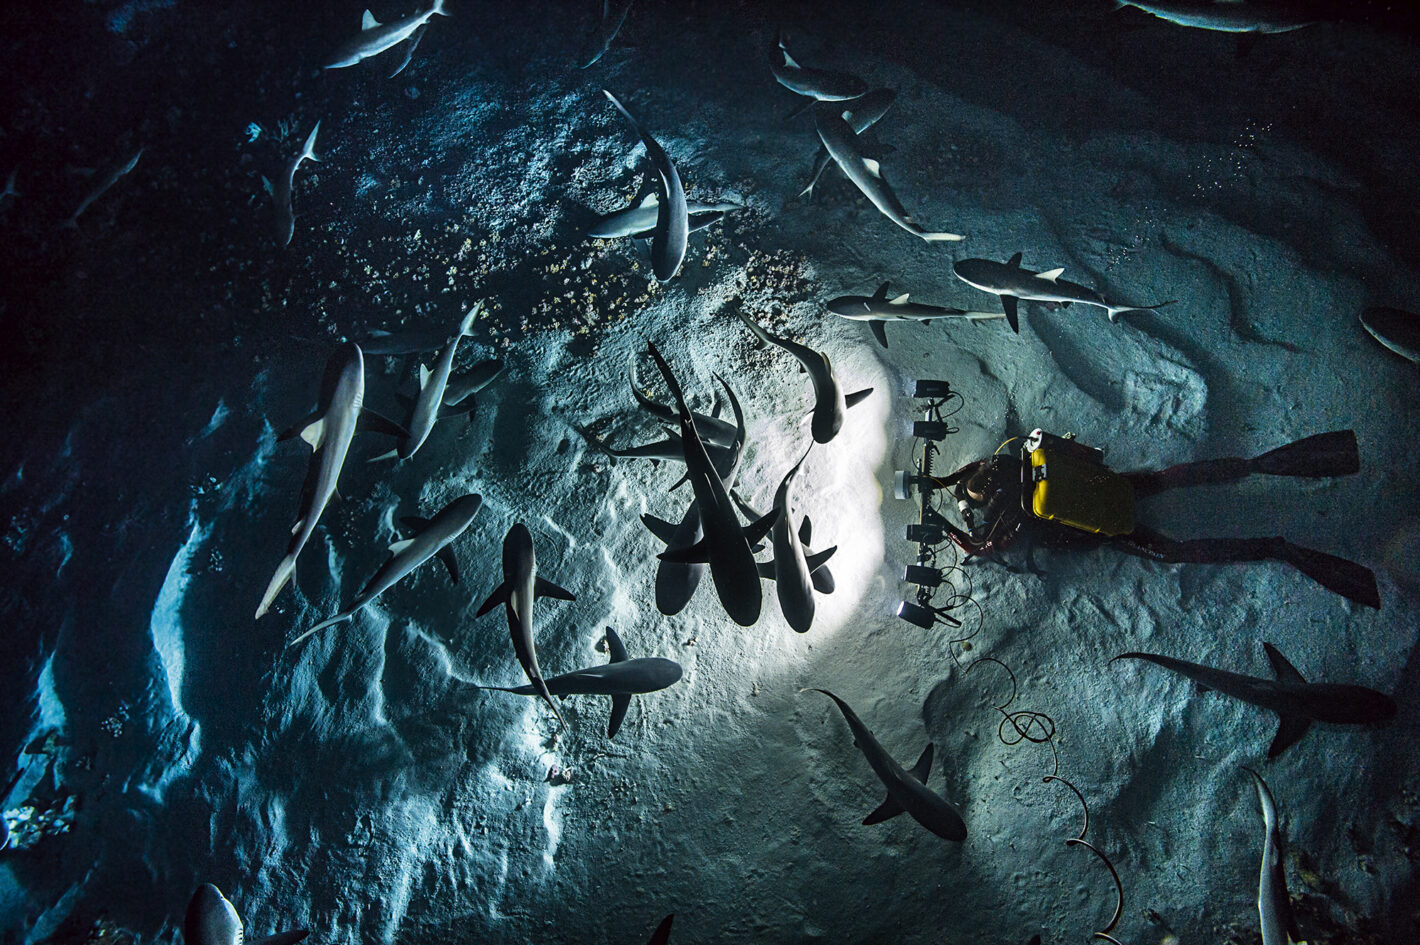 « 700 requins dans la nuit », une exposition et une soirée de rencontre avec Laurent Ballesta au Nikon Plaza